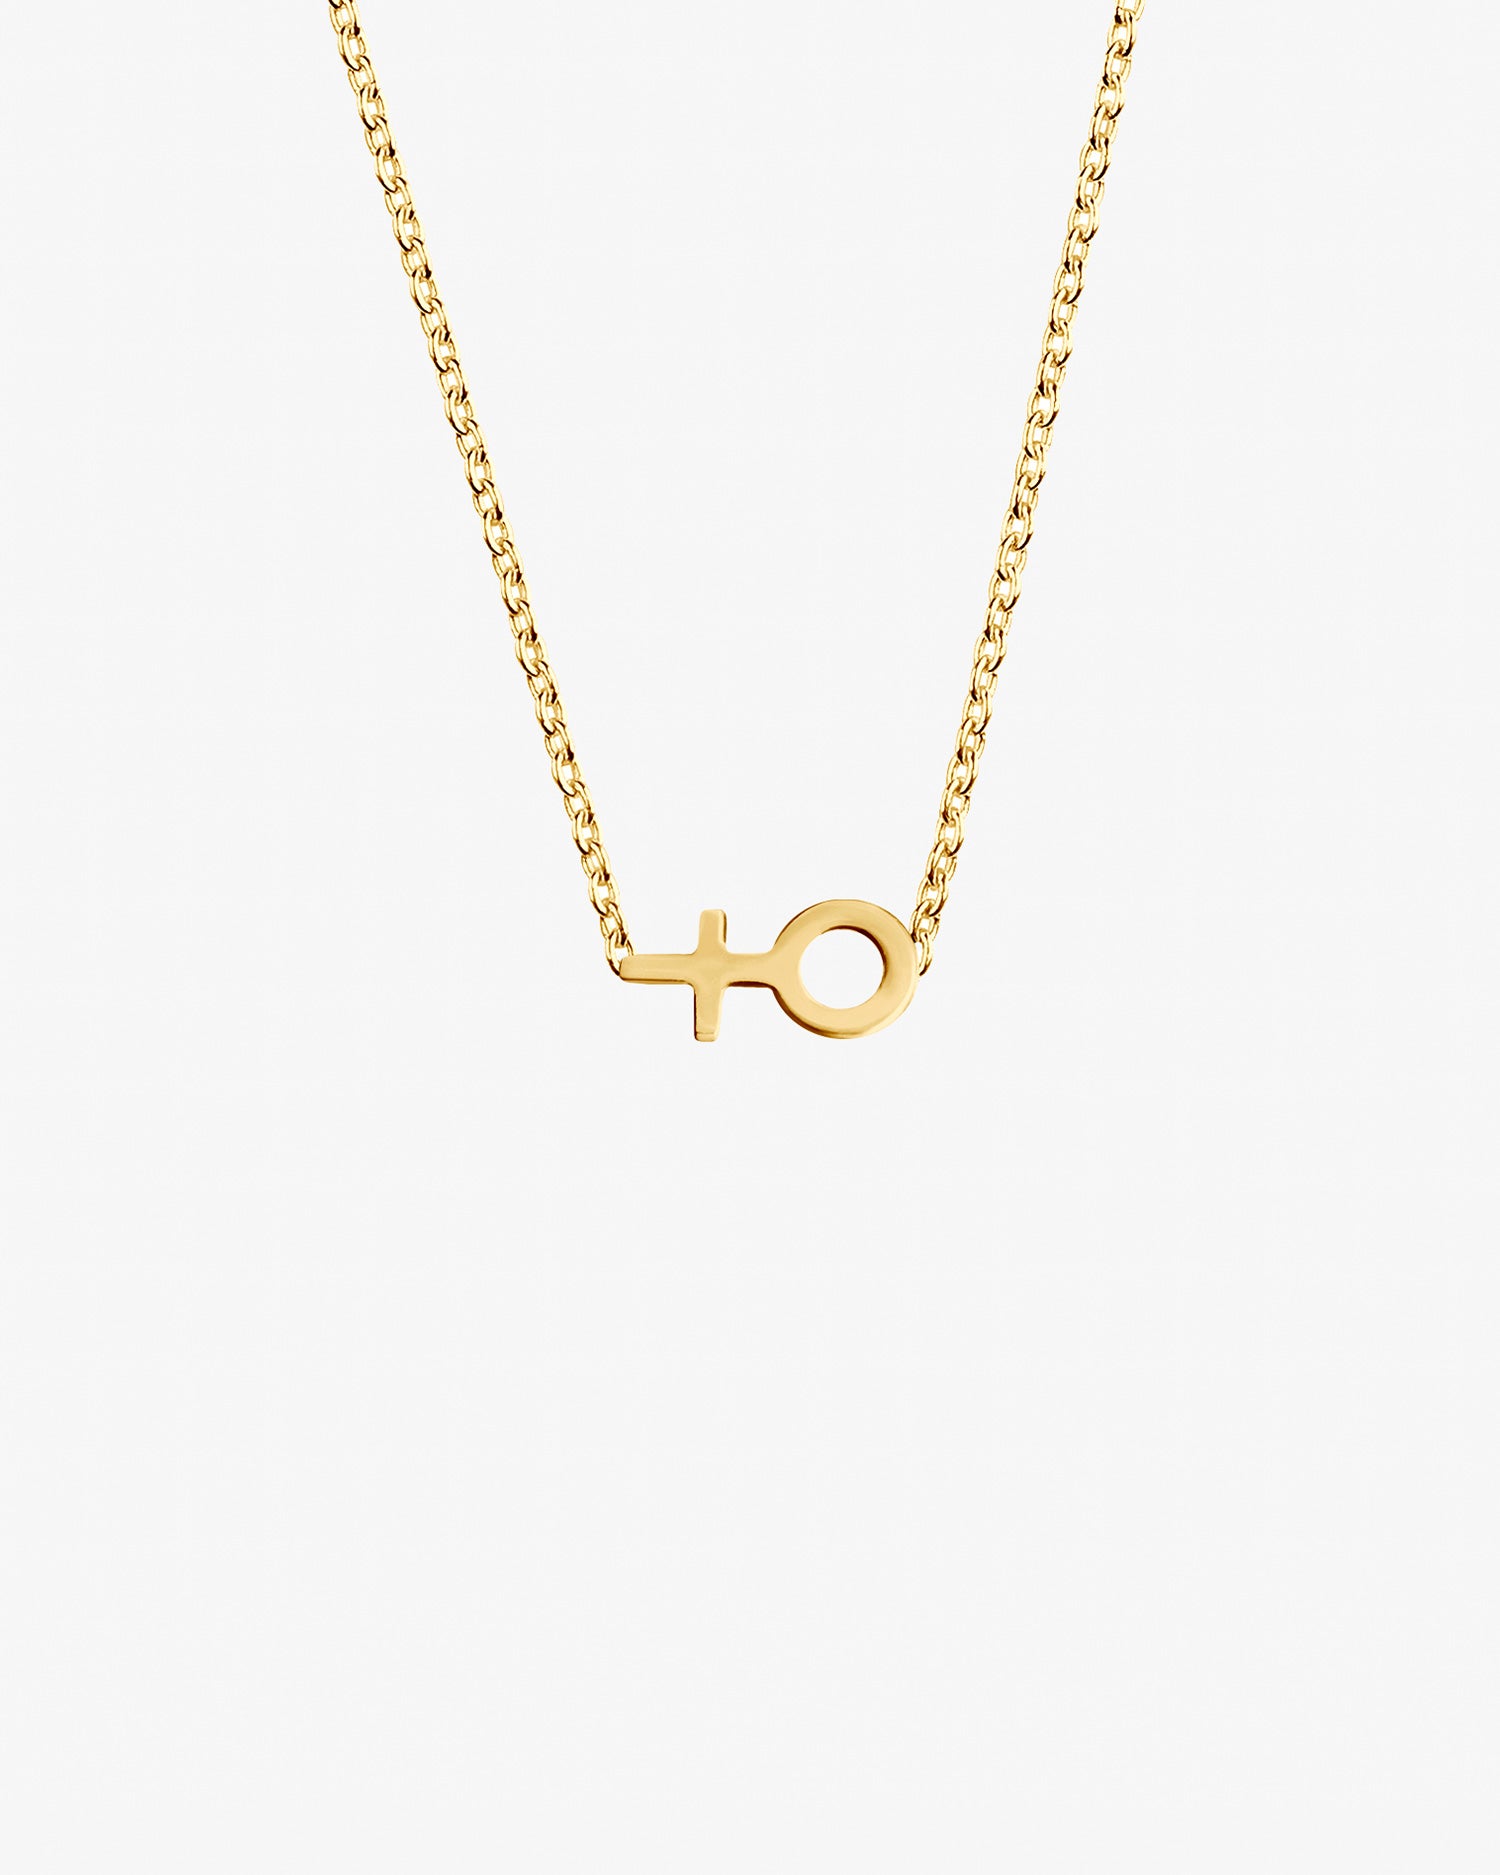 Women-unite-small-necklace-gold-1